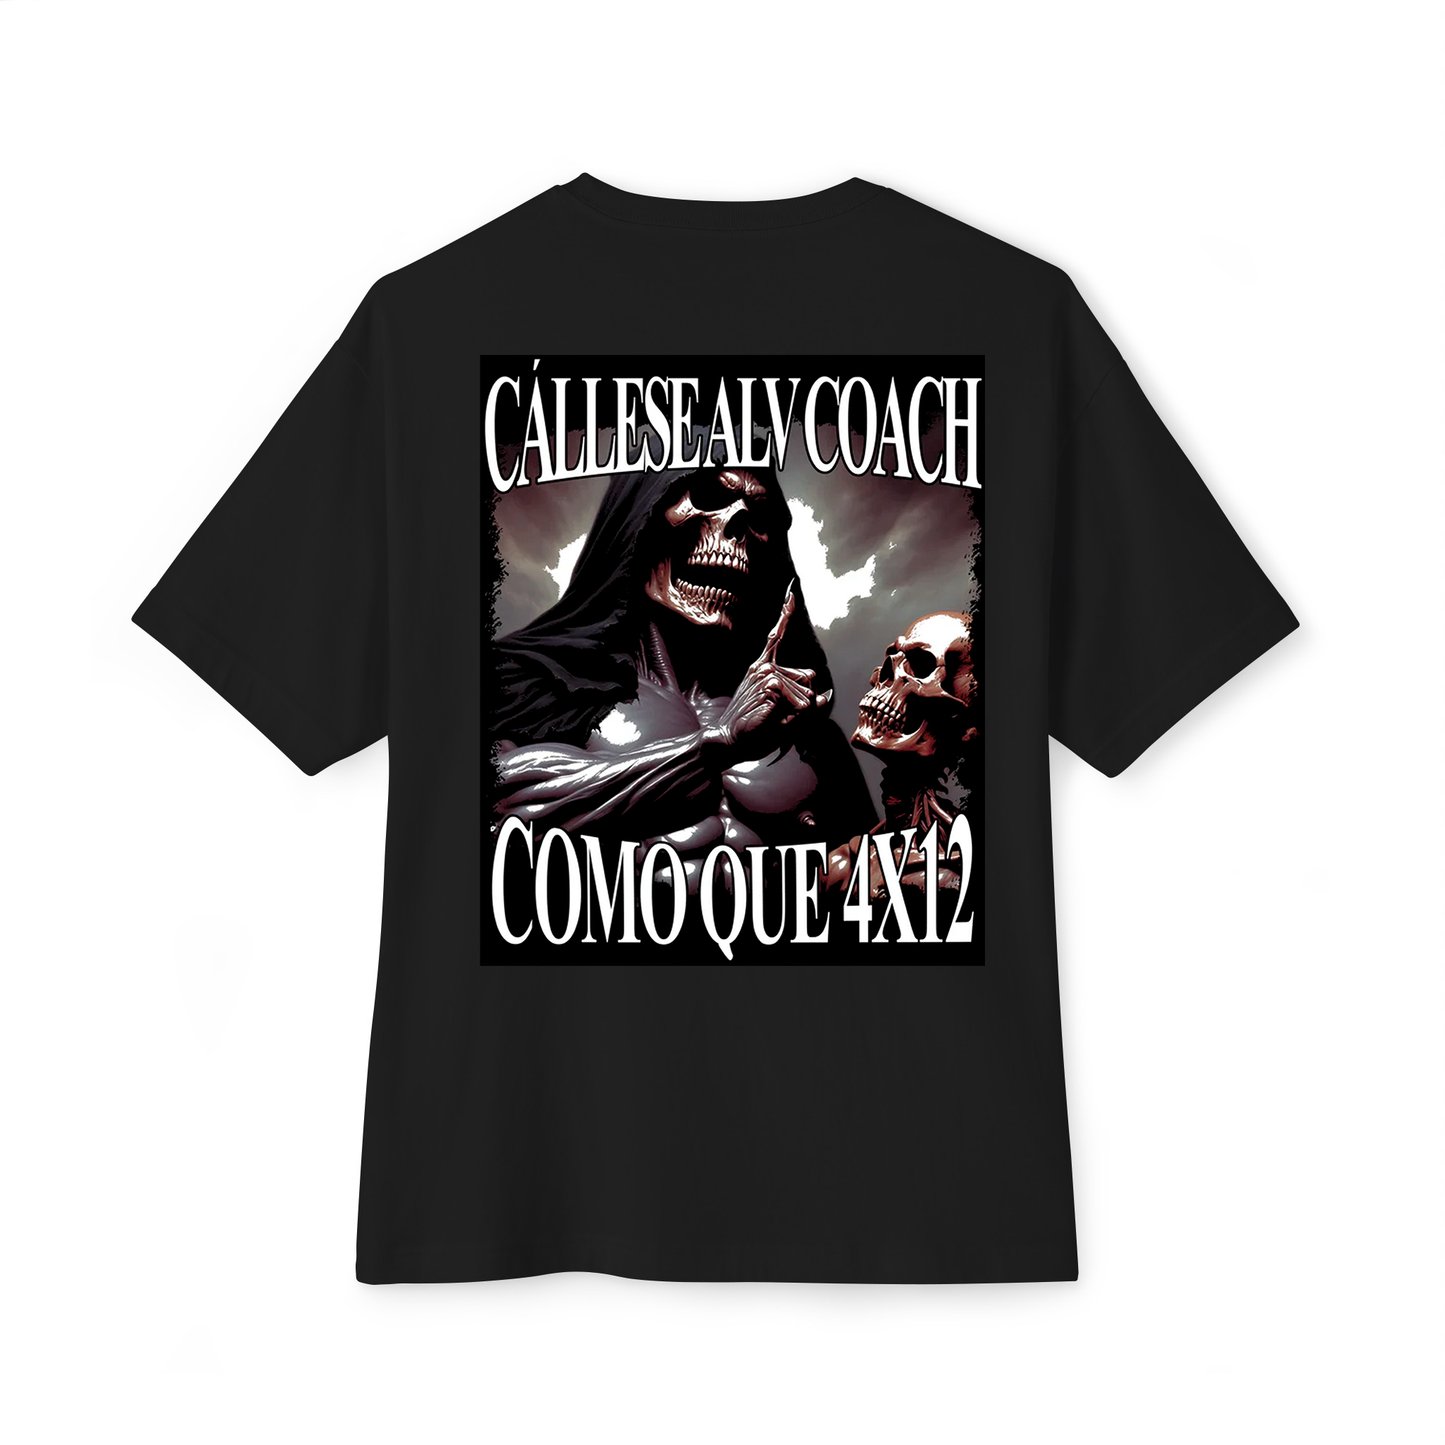 "CALLESE ALV COACH COMO QUE 4X12" Camiseta